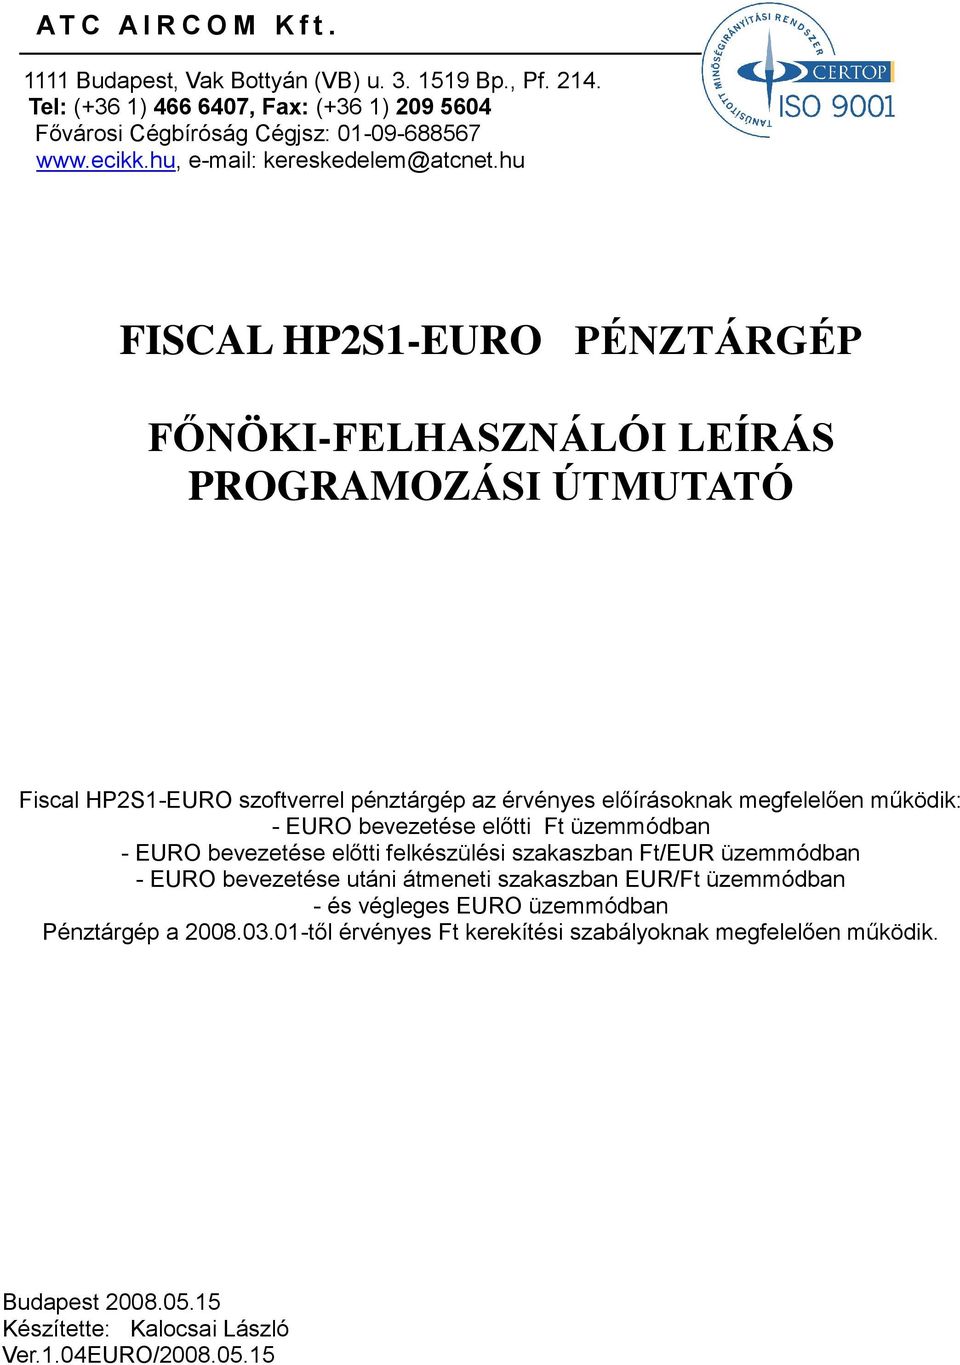 hu FISCAL HP2S1-EURO PÉNZTÁRGÉP FŐNÖKI-FELHASZNÁLÓI LEÍRÁS PROGRAMOZÁSI ÚTMUTATÓ Fiscal HP2S1-EURO szoftverrel pénztárgép az érvényes előírásoknak megfelelően működik: - EURO